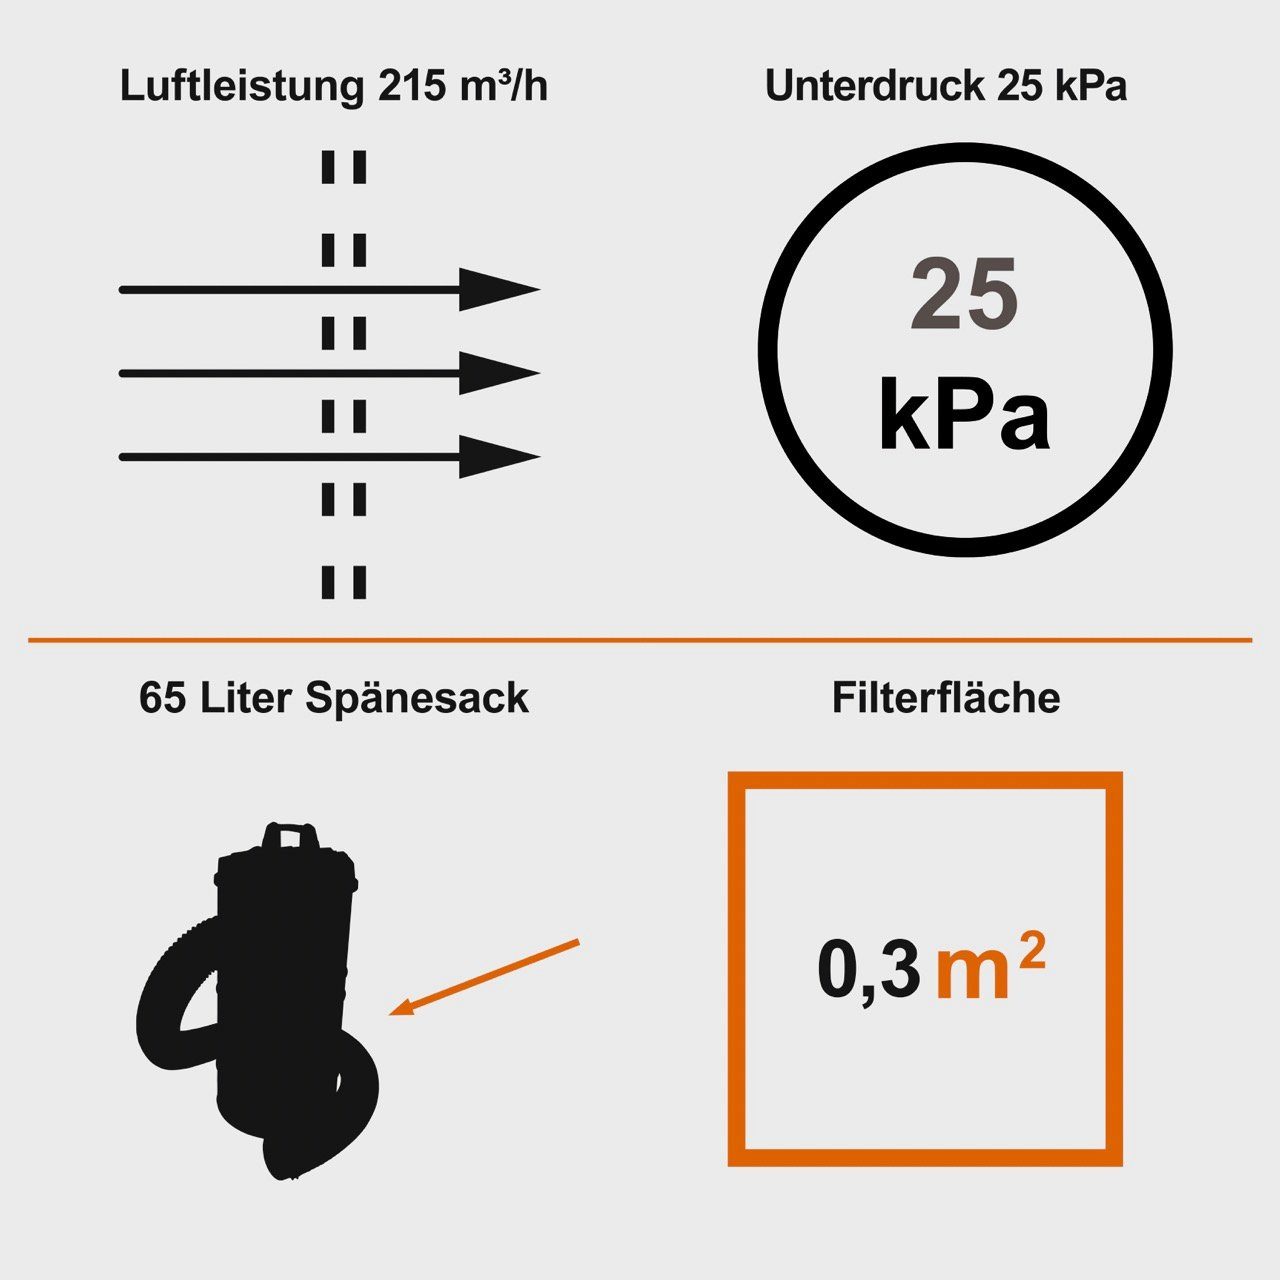 Absauganlage +Adapter Set, IXES 1200 65L 215m3/h ASA100 W Scheppach Späneabsaugung Absauganlage 1200W